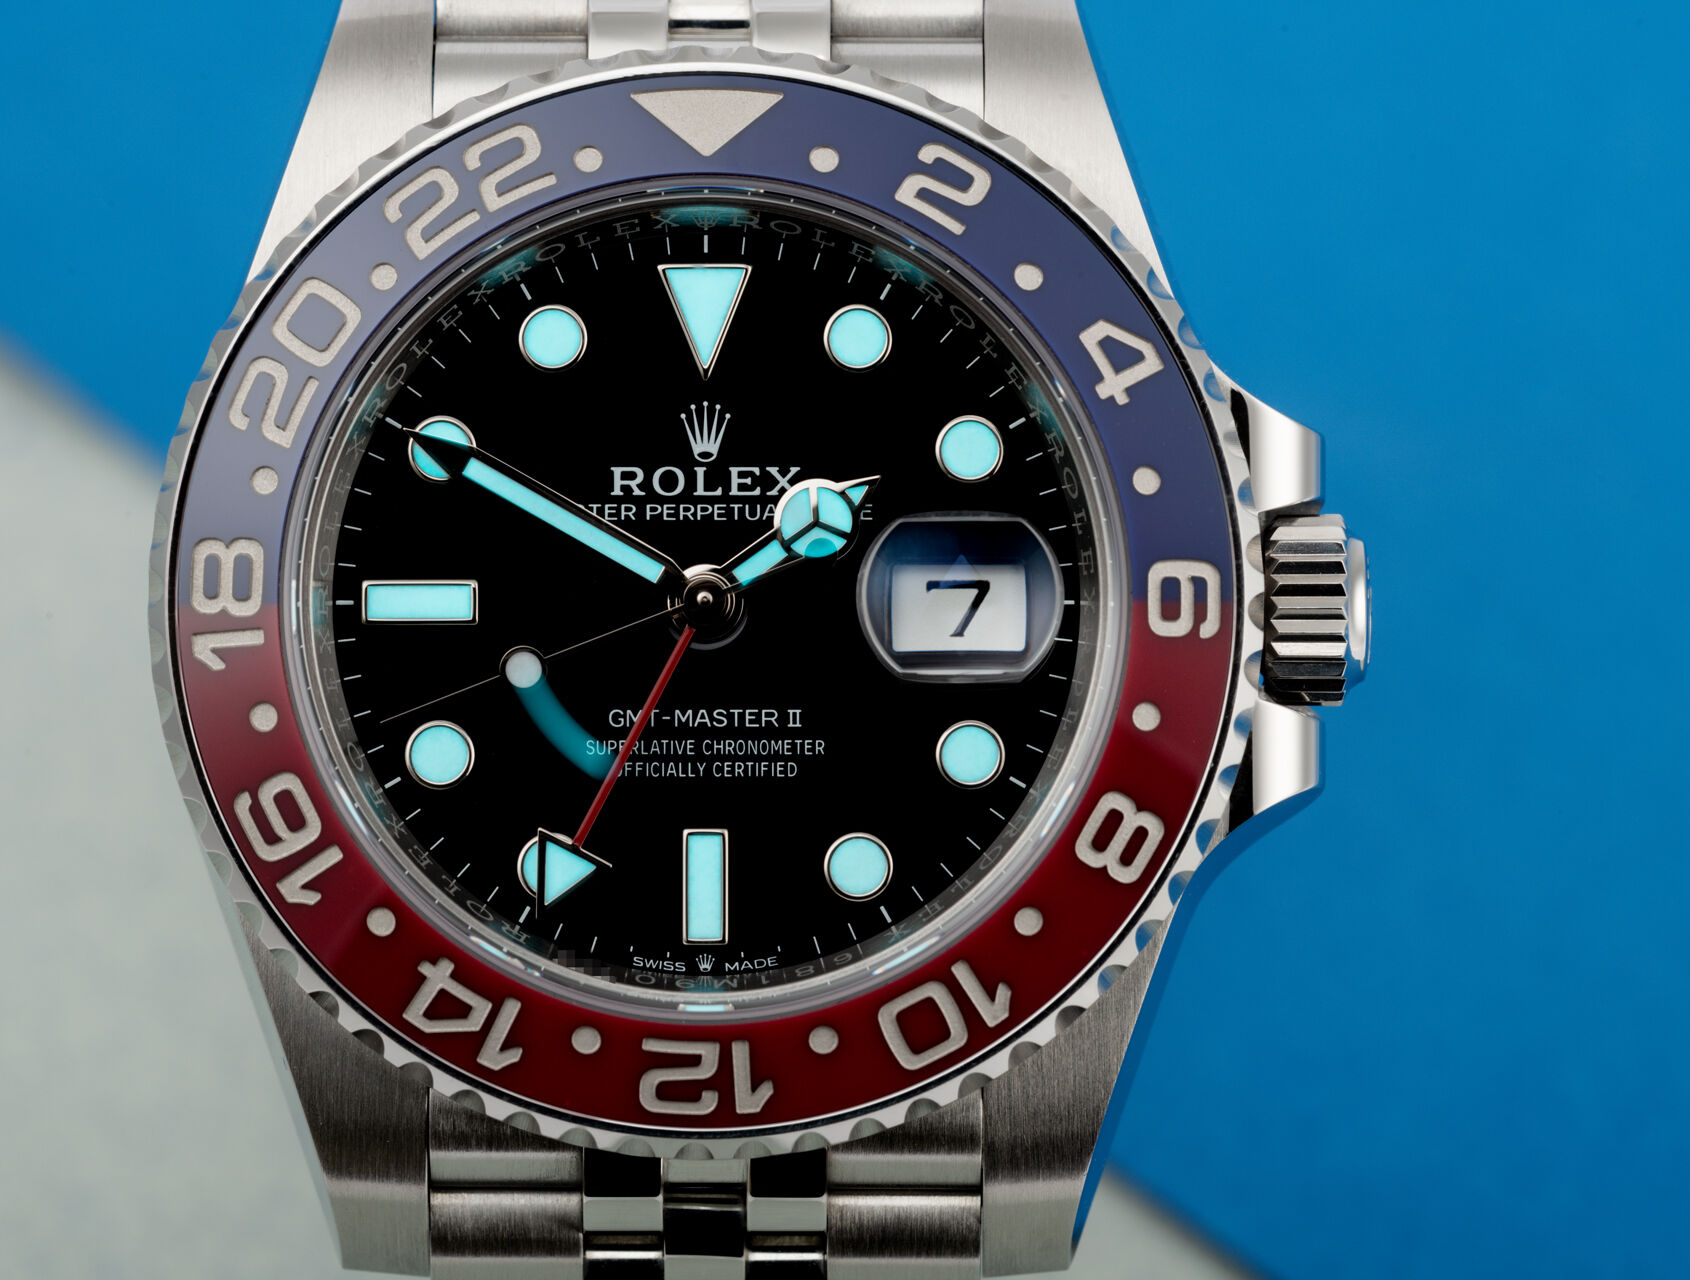 ref 126710BLRO | 126710BLRO - Rolex Warranty to 2024 | Rolex GMT-Master II